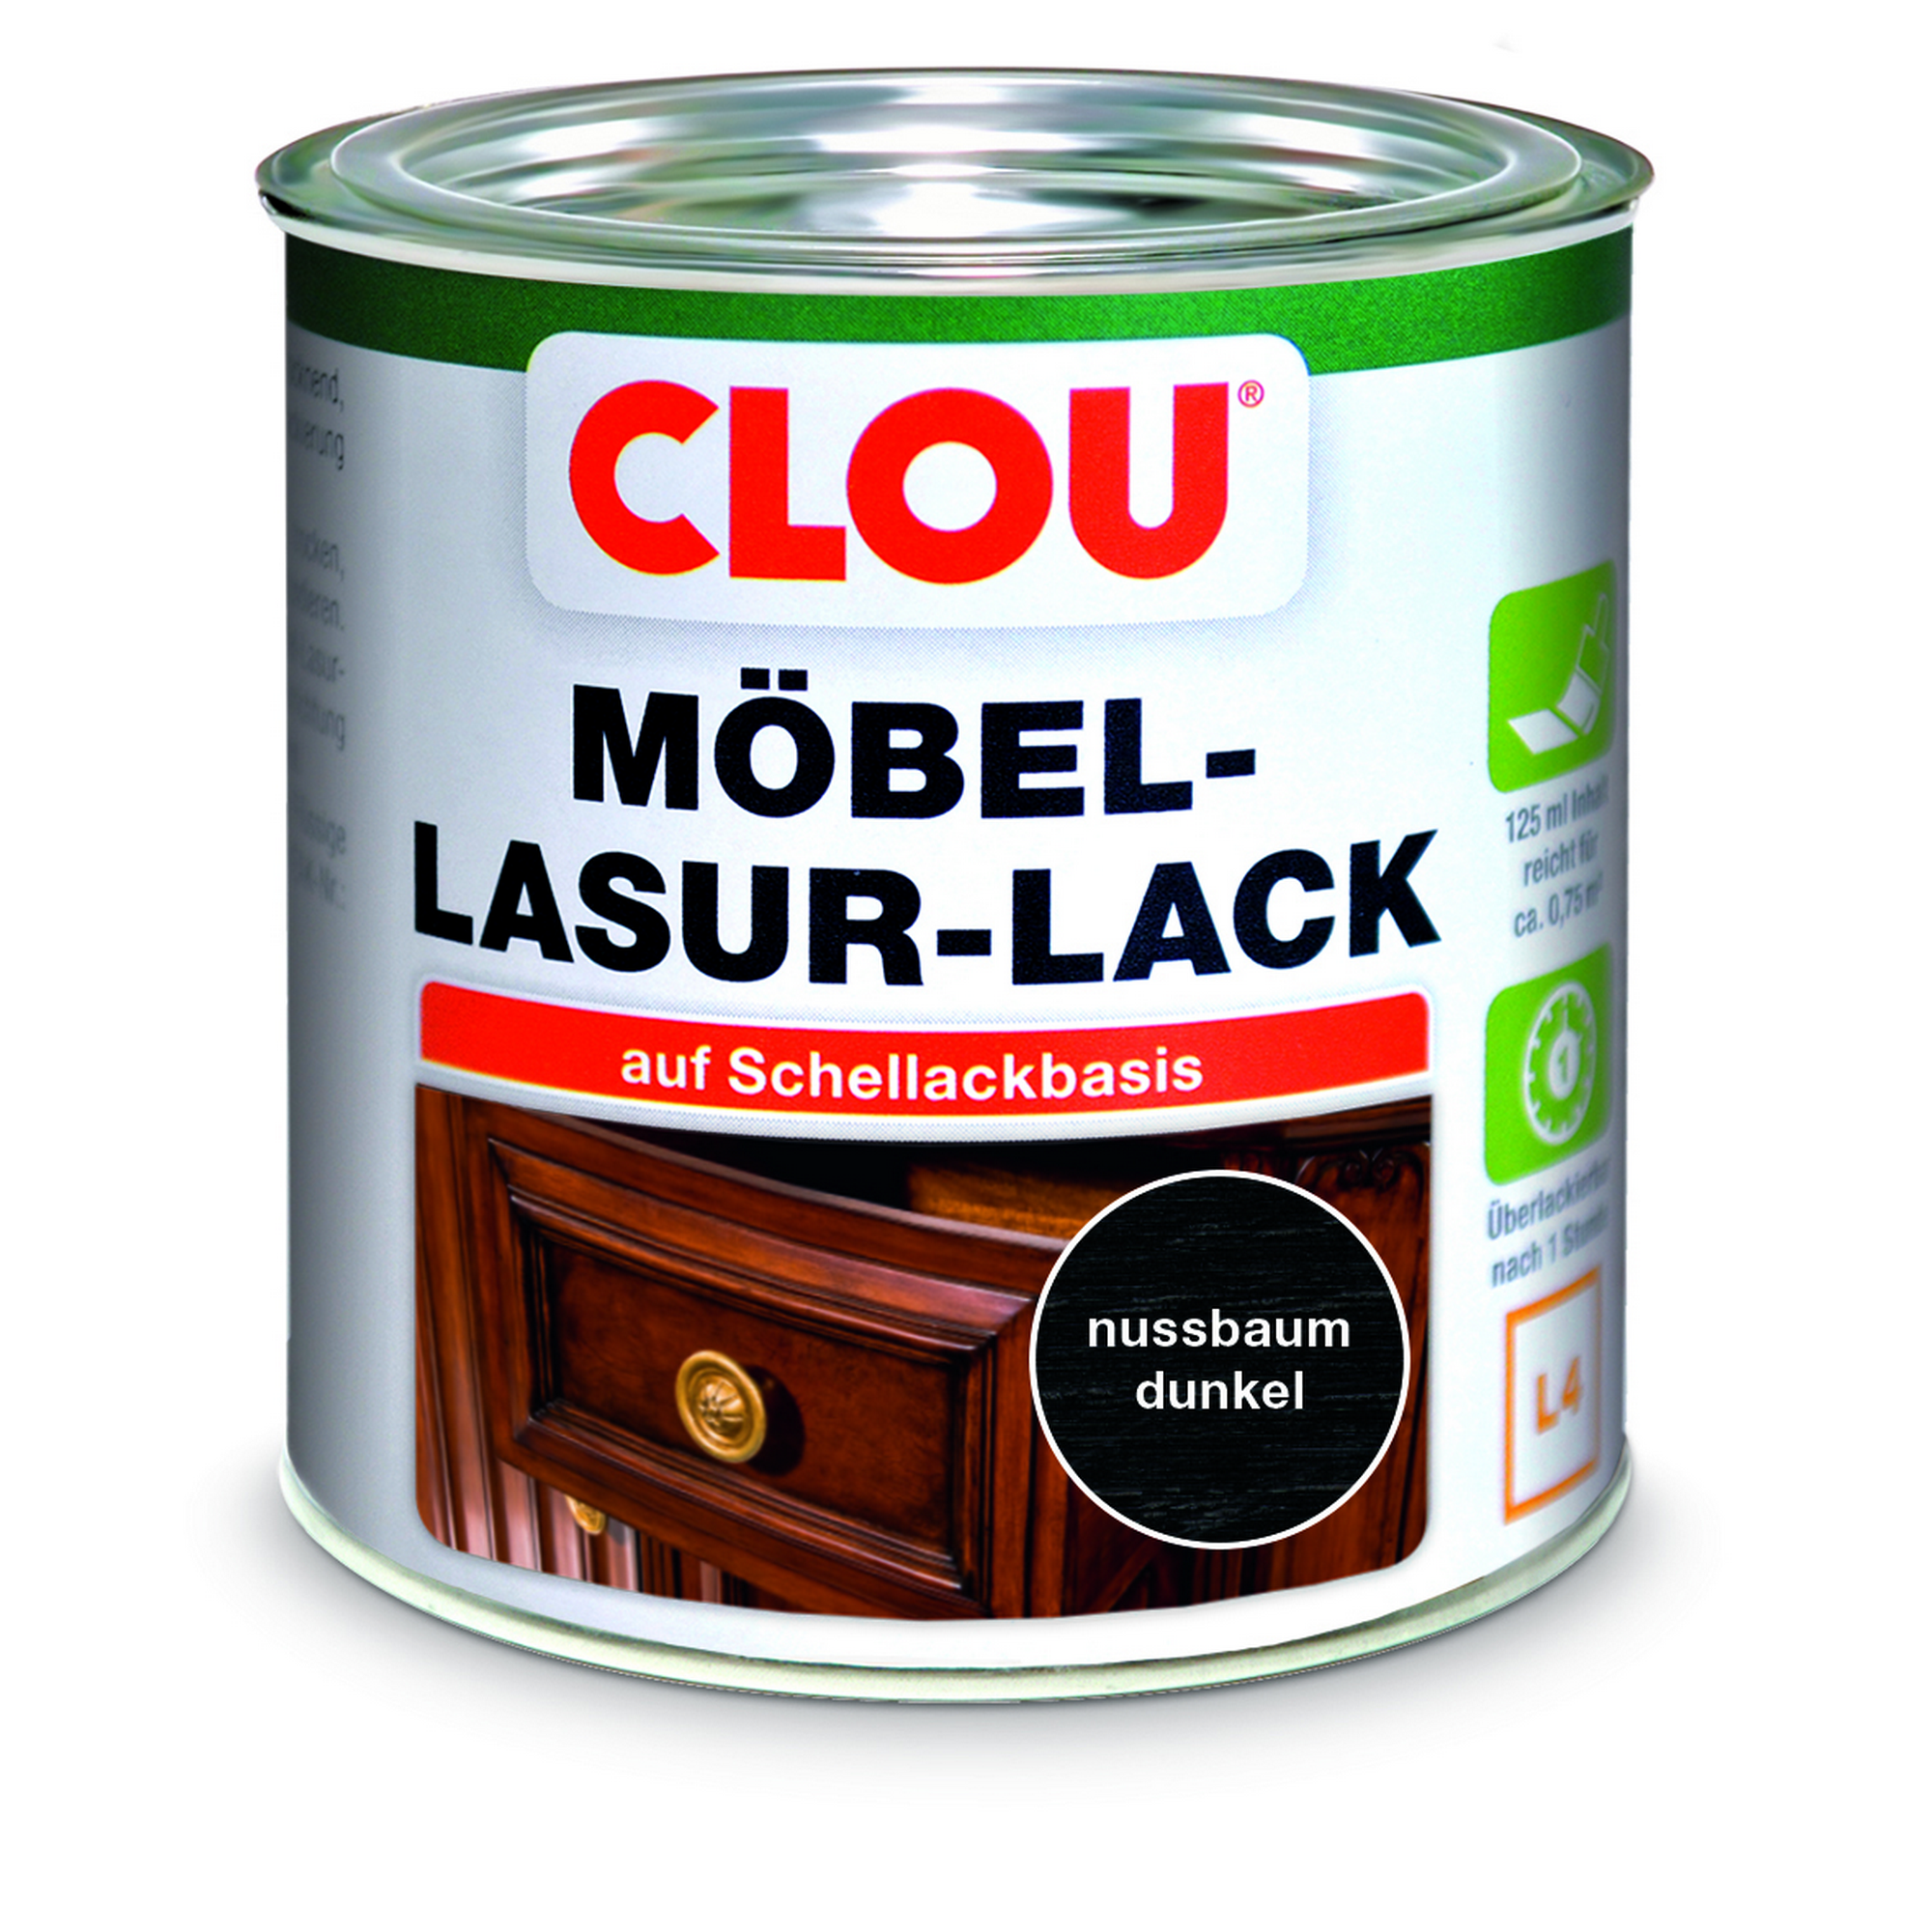 Möbel-Lasurlack nussbaumfarben dunkel 125 ml + product picture